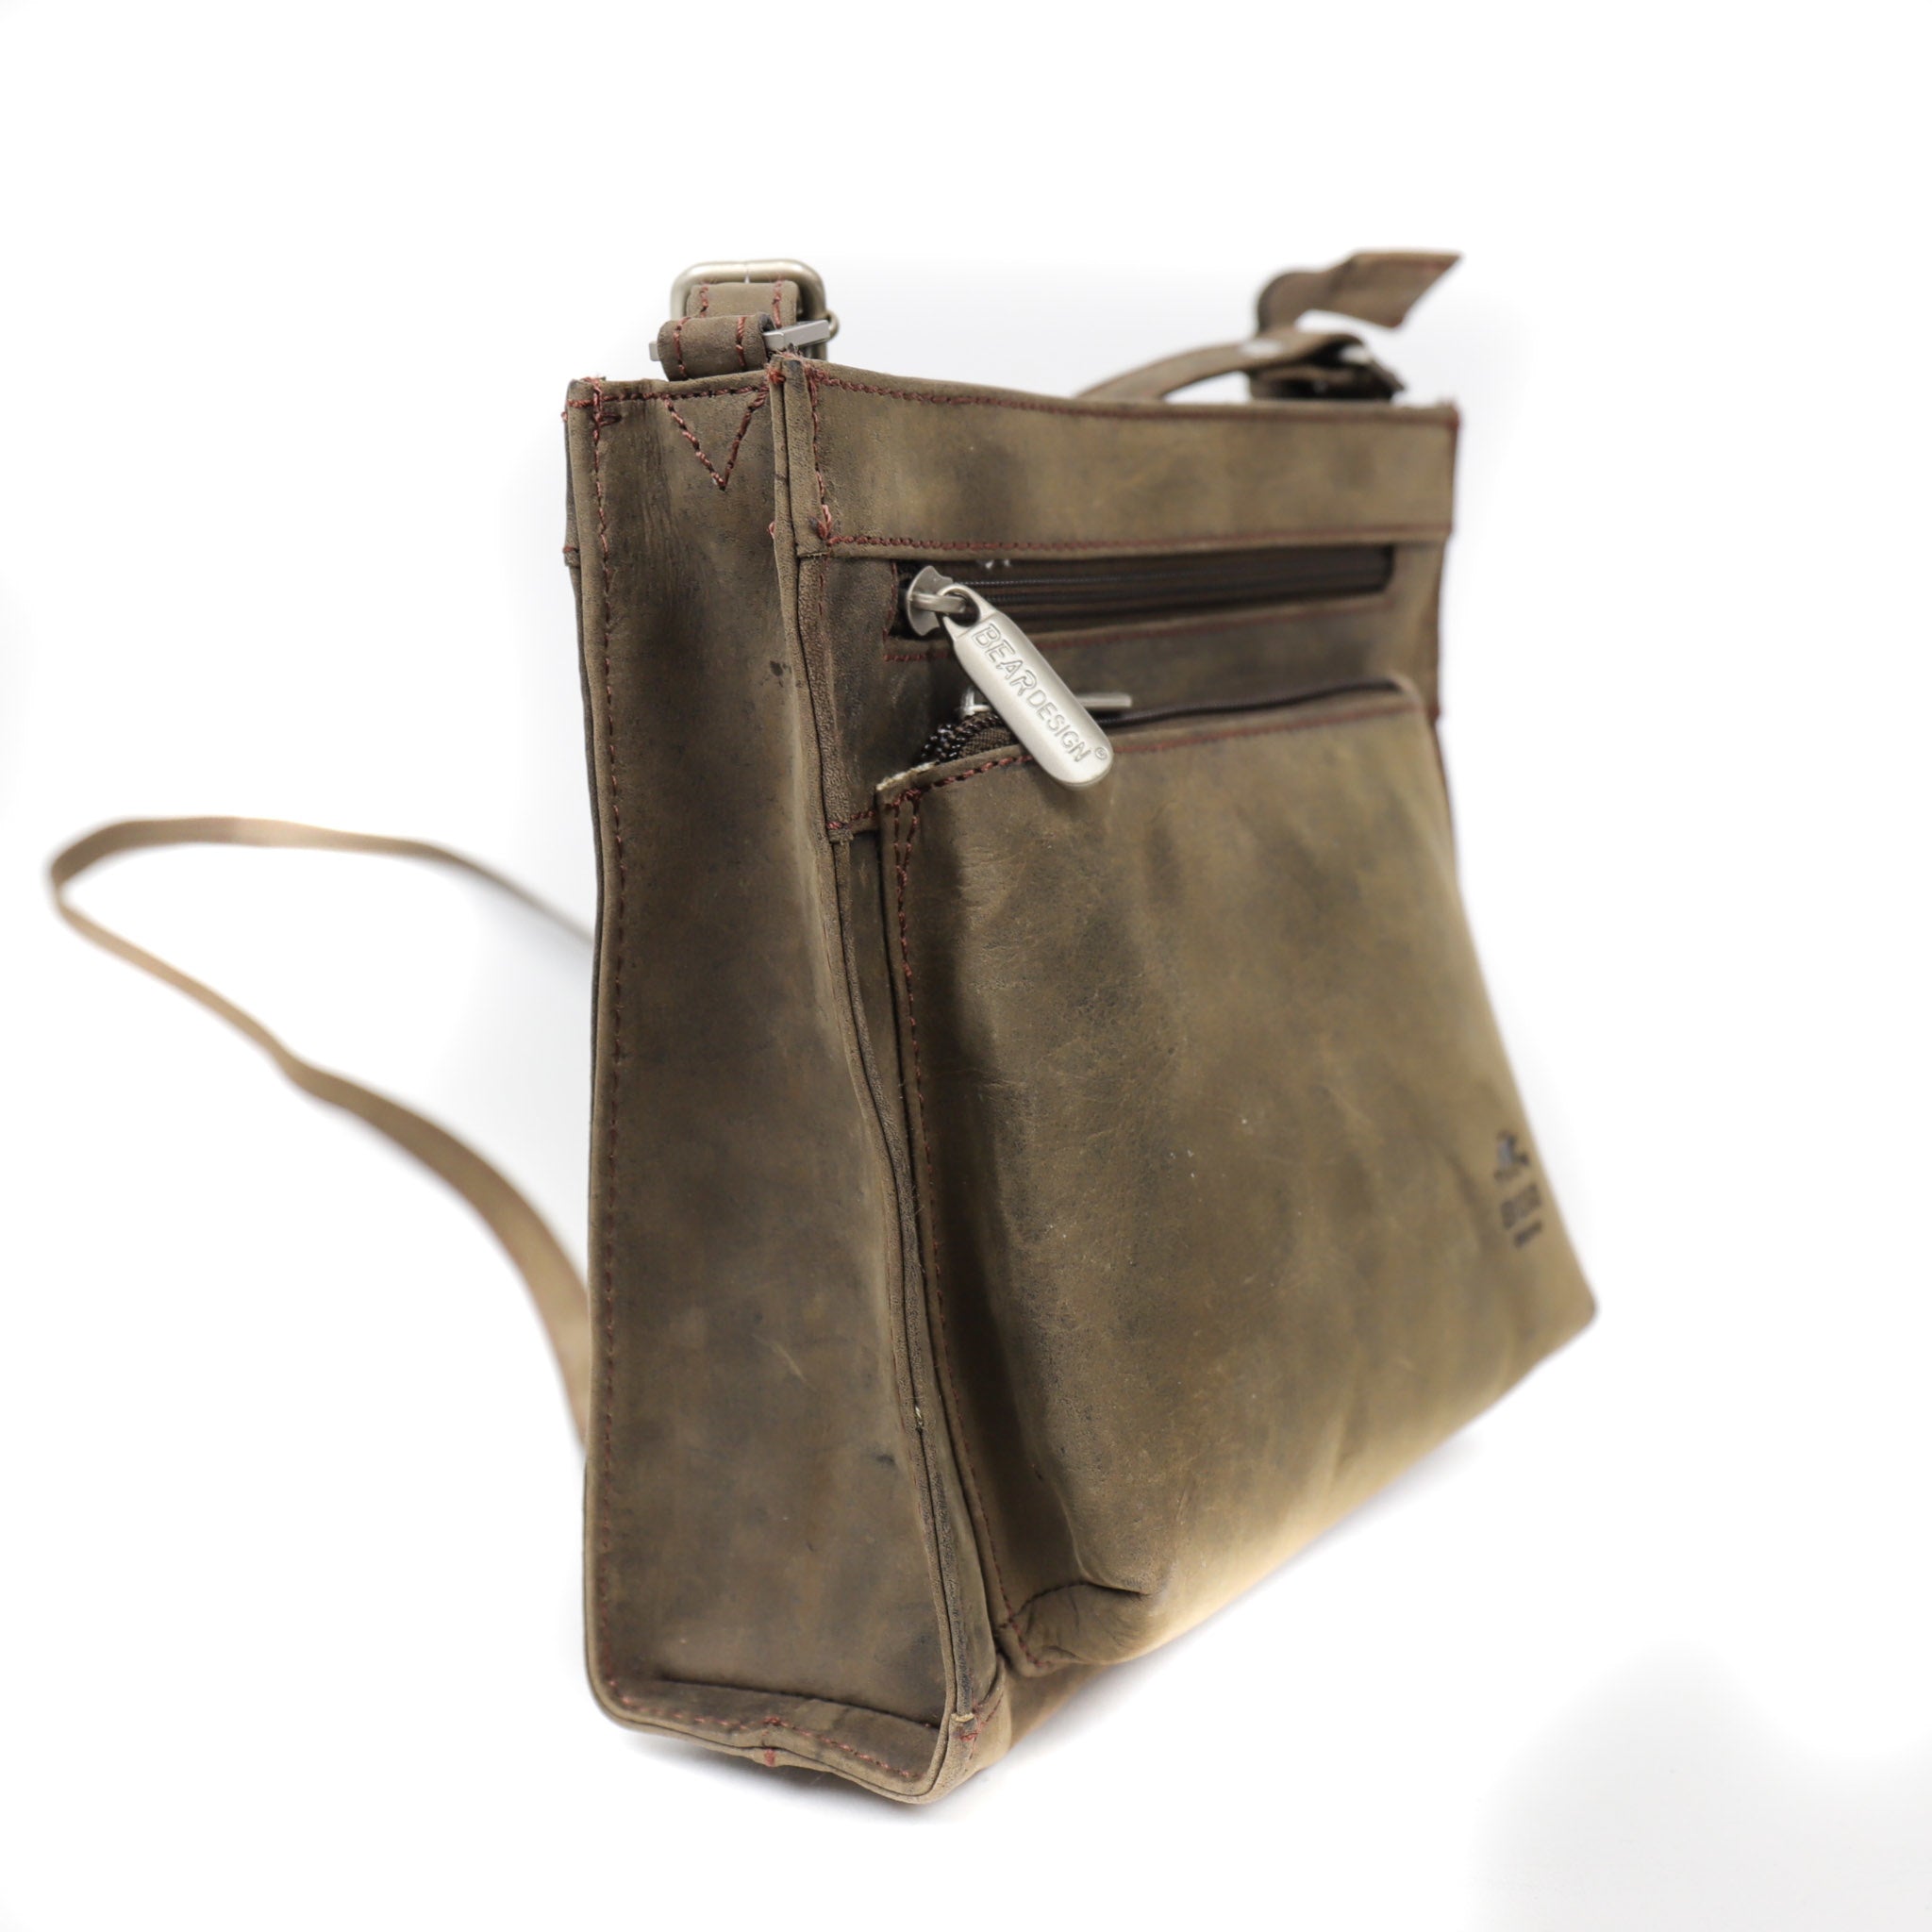 Shoulder bag 'Davita' brown - HD 3566